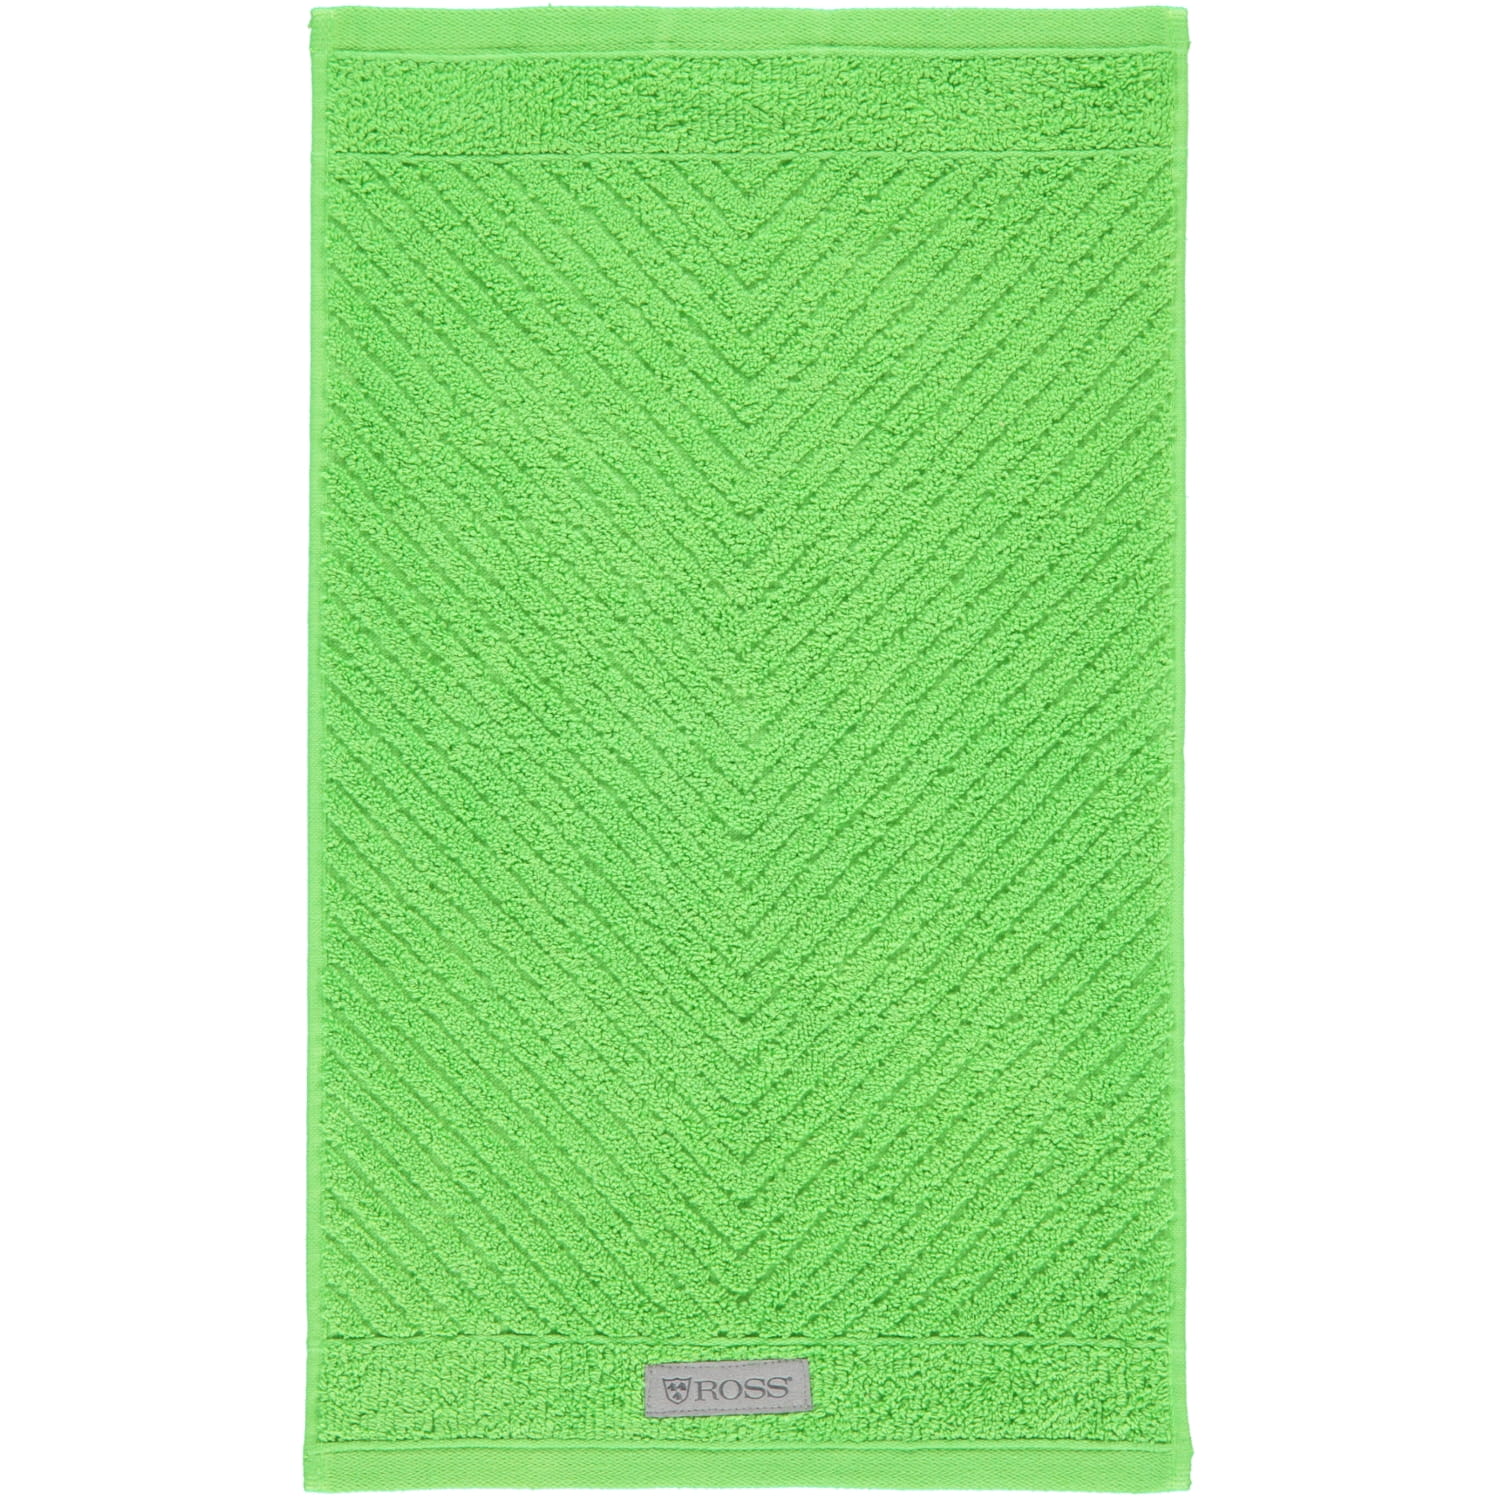 Farbe: Ross - Handtücher 36 | | | Ross 4006 grasgrün - Marken Ross Smart